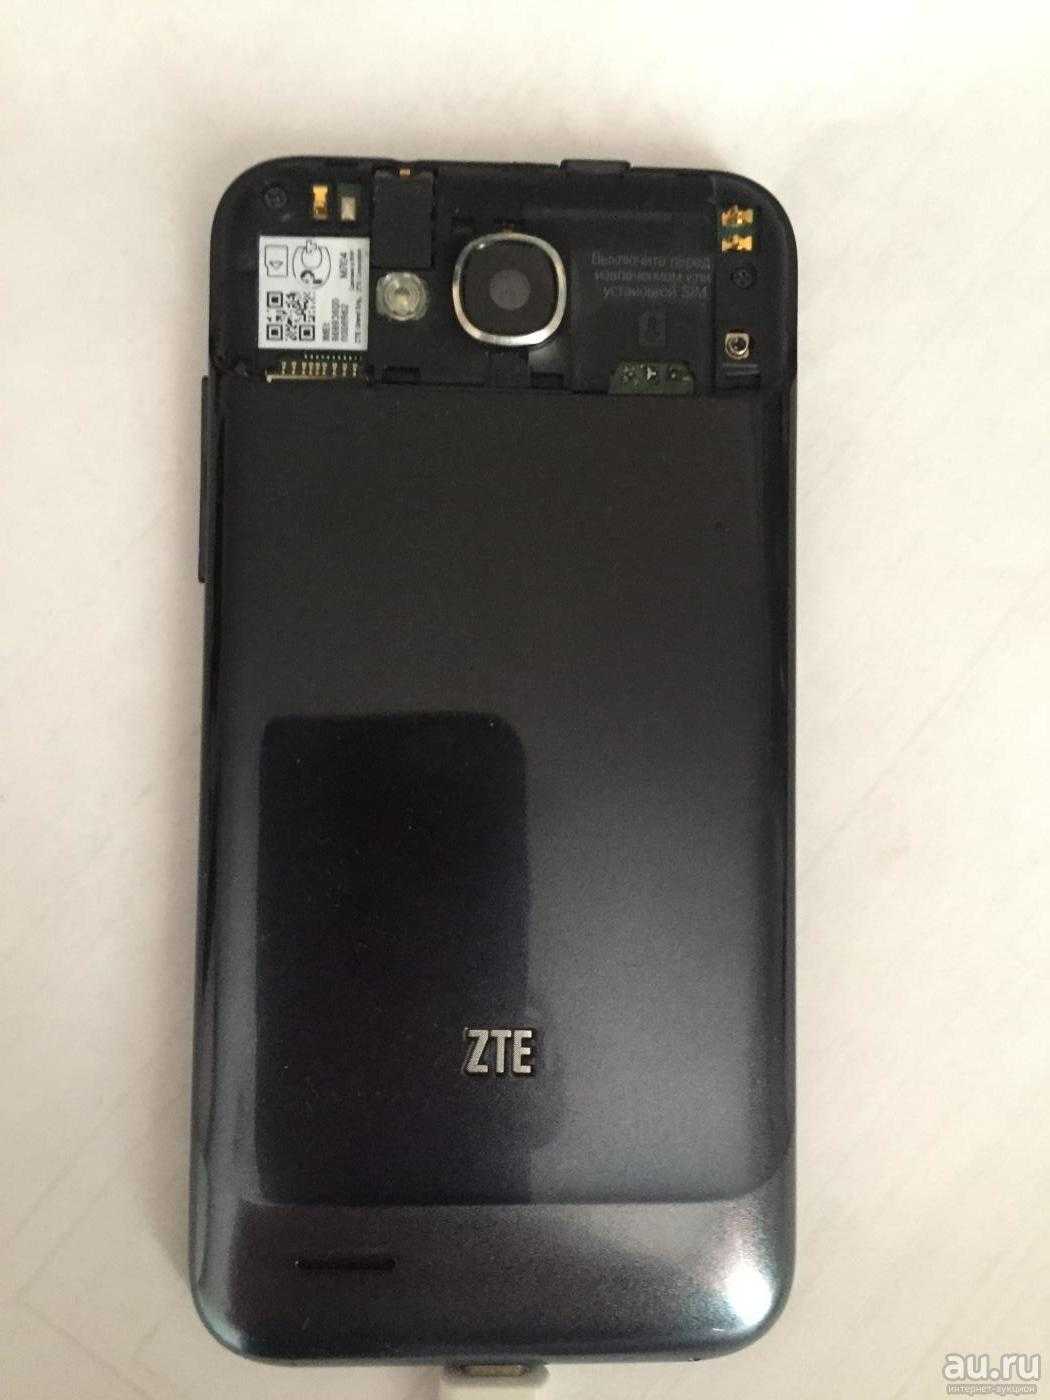 Смартфон zte grand era купить по акционной цене , отзывы и обзоры.